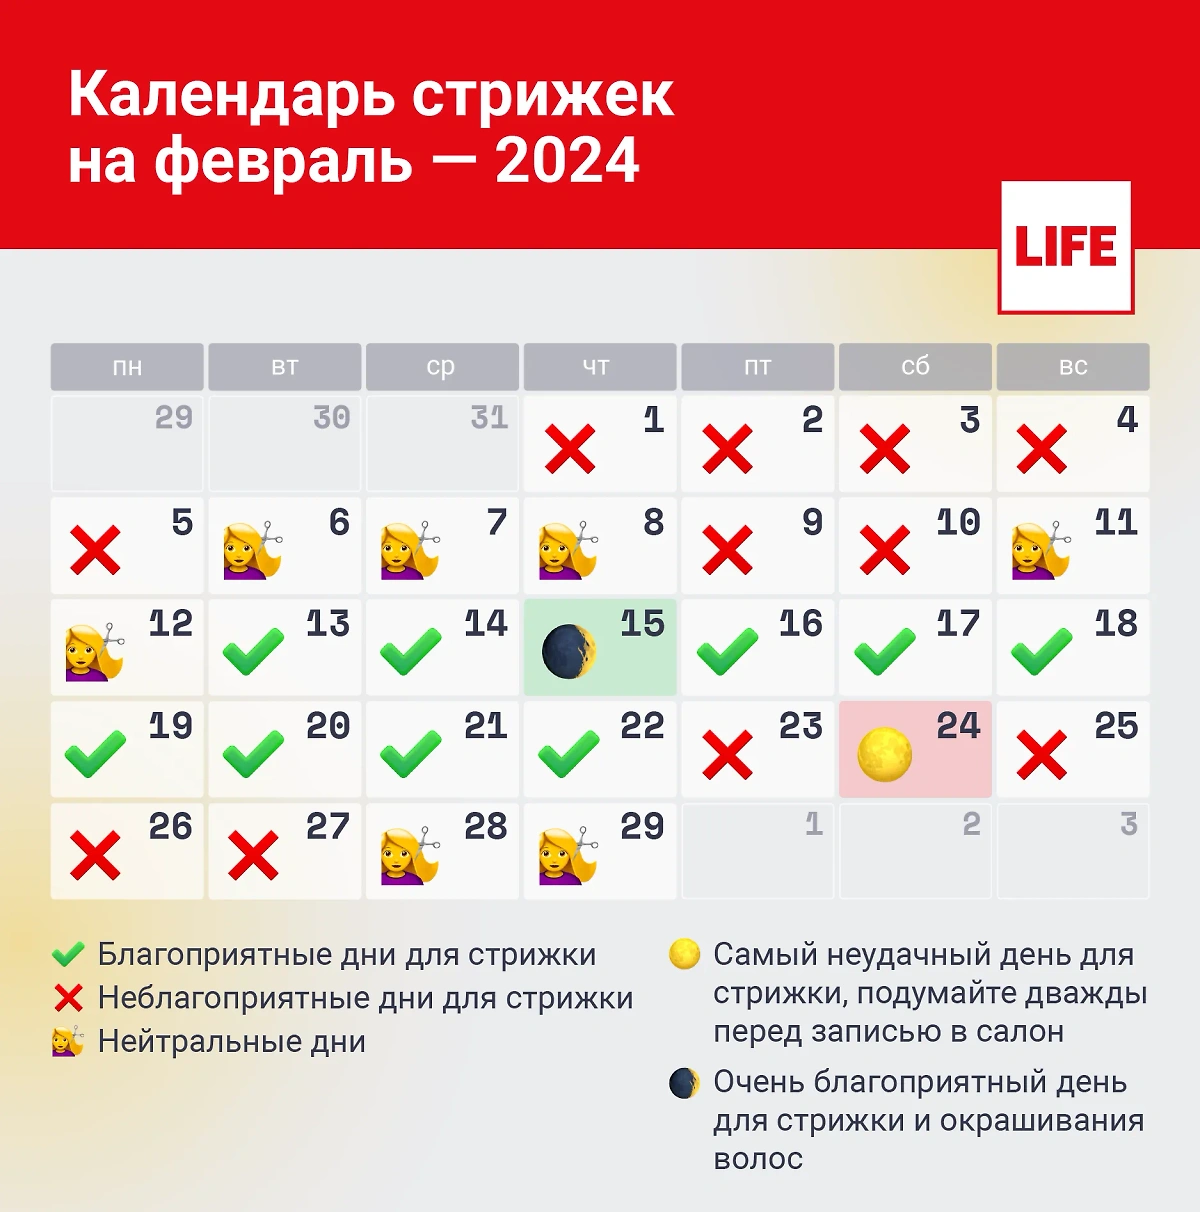 Календарь стрижек: благоприятные и неблагоприятные дни для стрижки в феврале 2024 года. Инфографика © LIFЕ